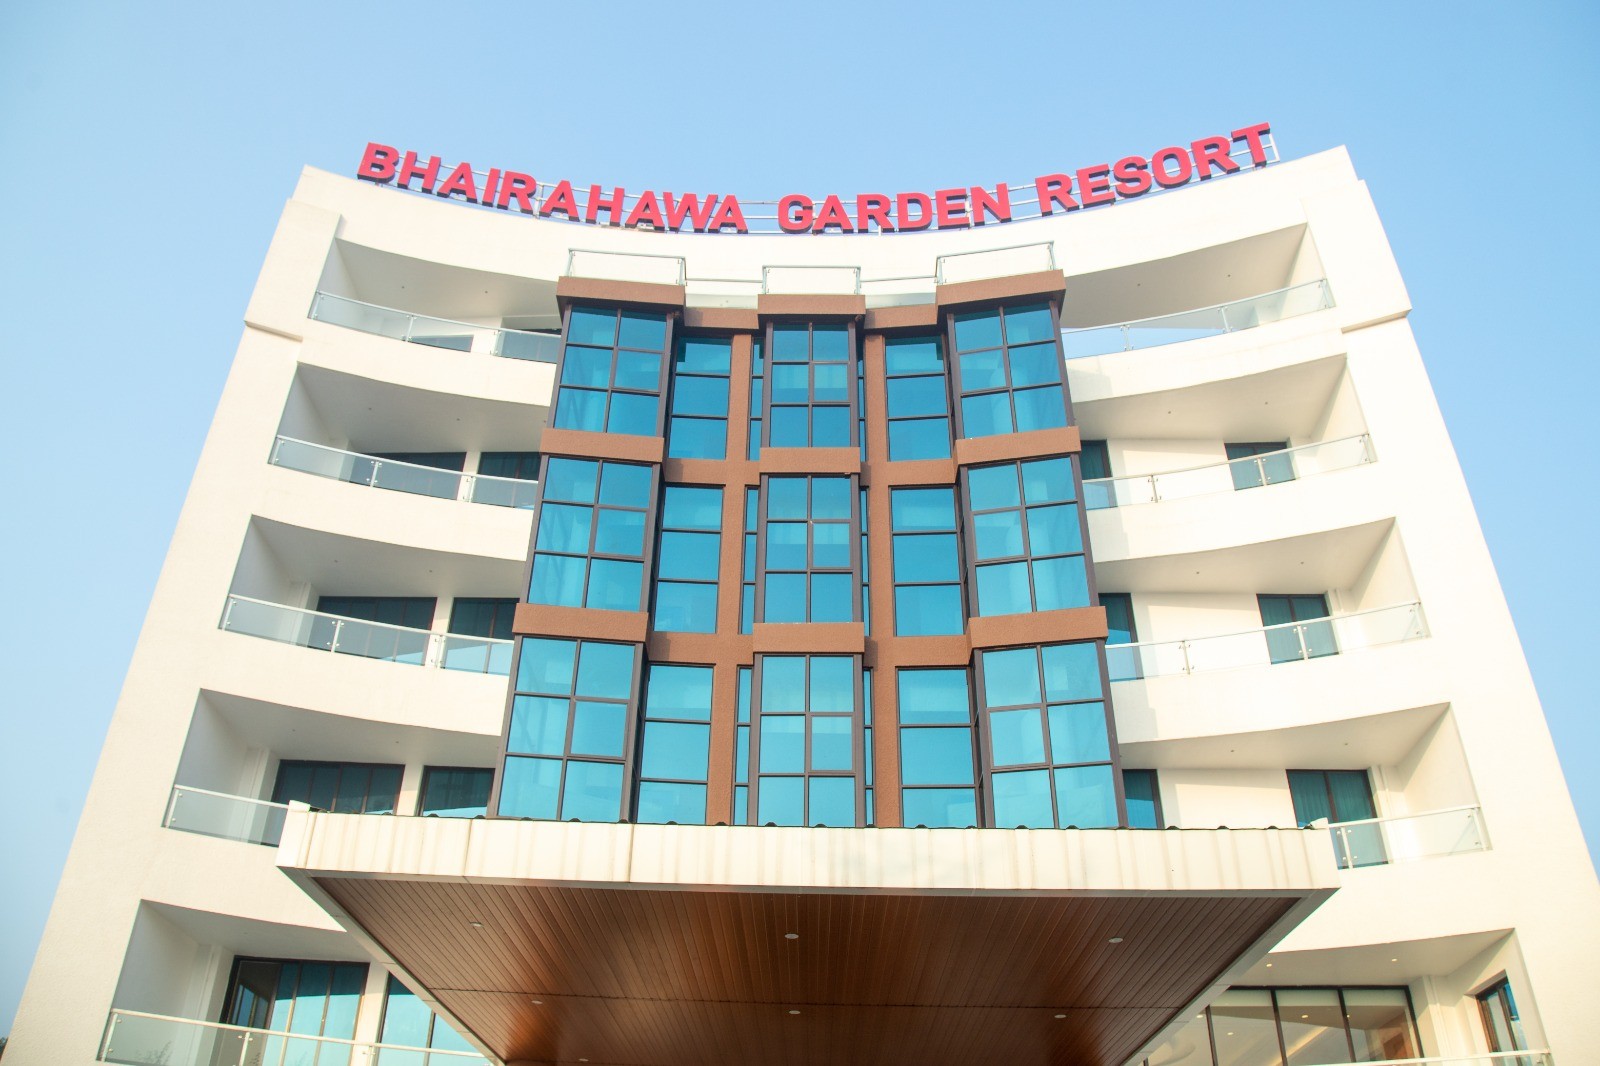 Hotel Bhairahawa Garden Resort